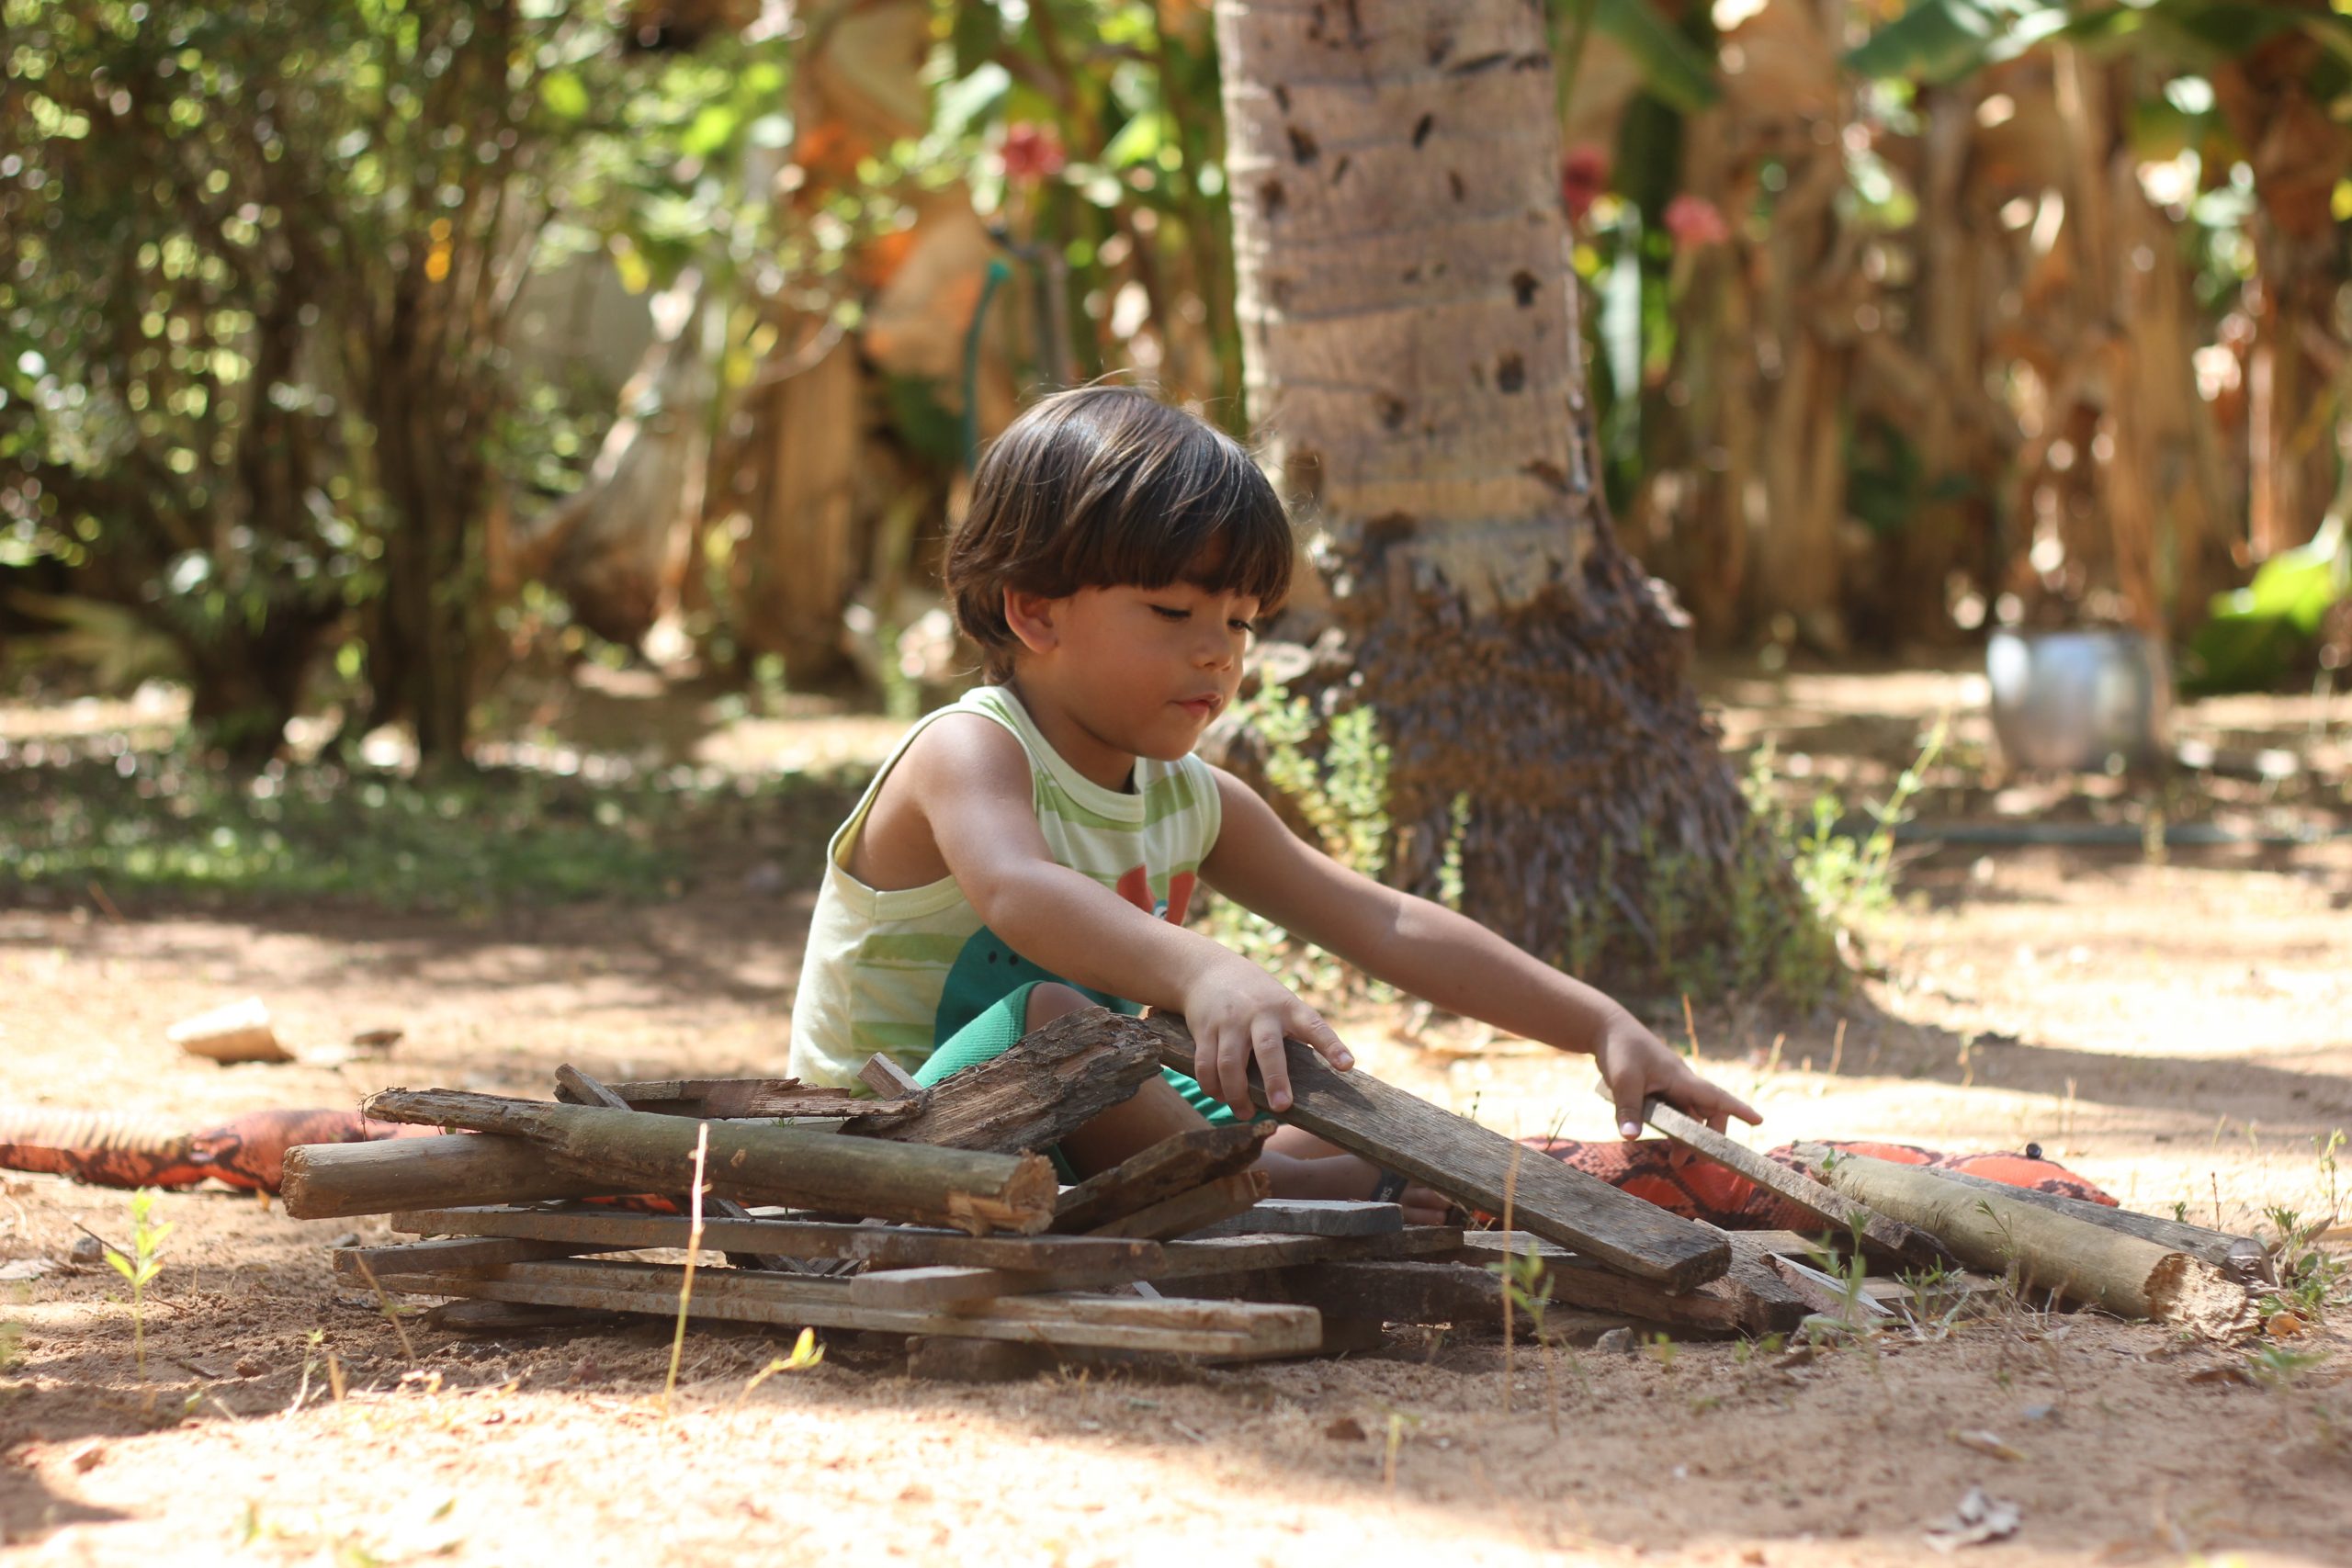 Criança brincando com madeiras, sentada no chão de terra e ao ar livre. Manifesto por escolas com mais natureza